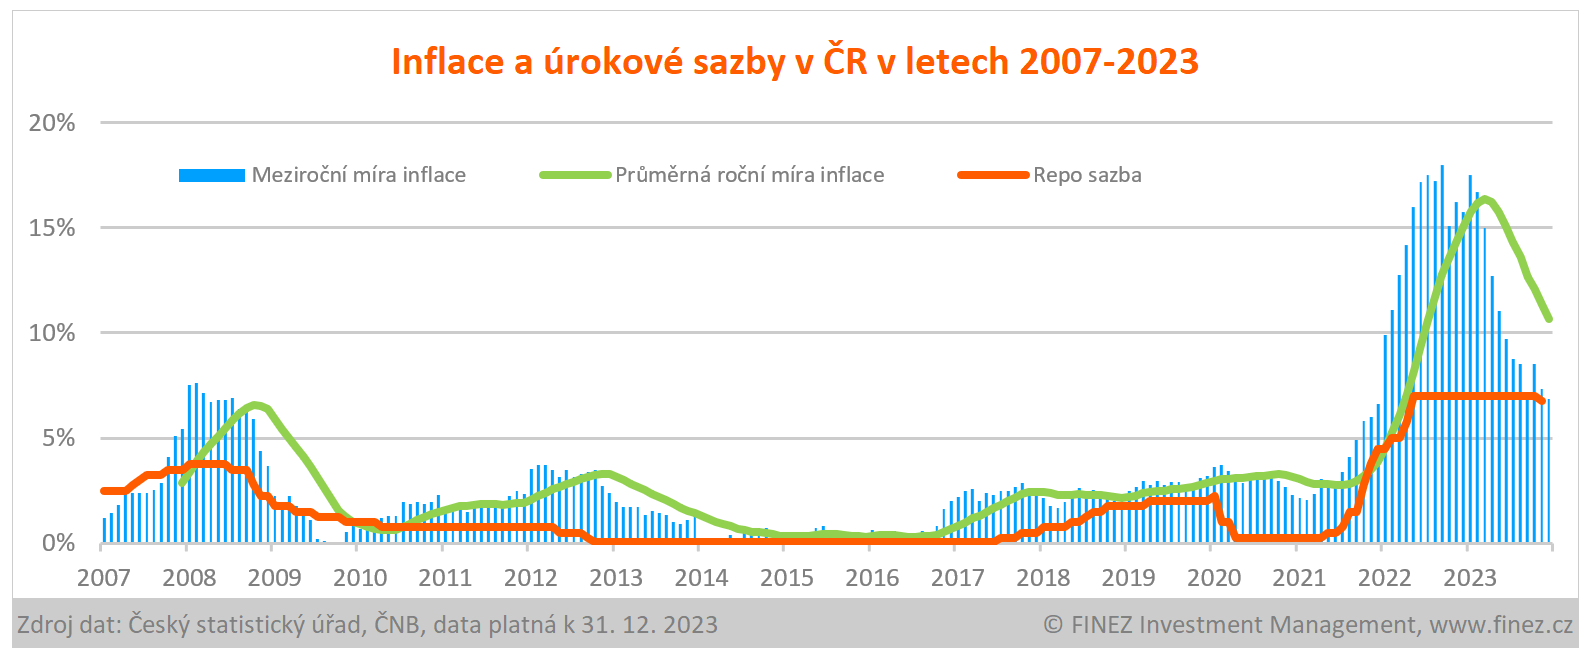 Inflace a úrokové sazby v ČR v letech 2007-2023